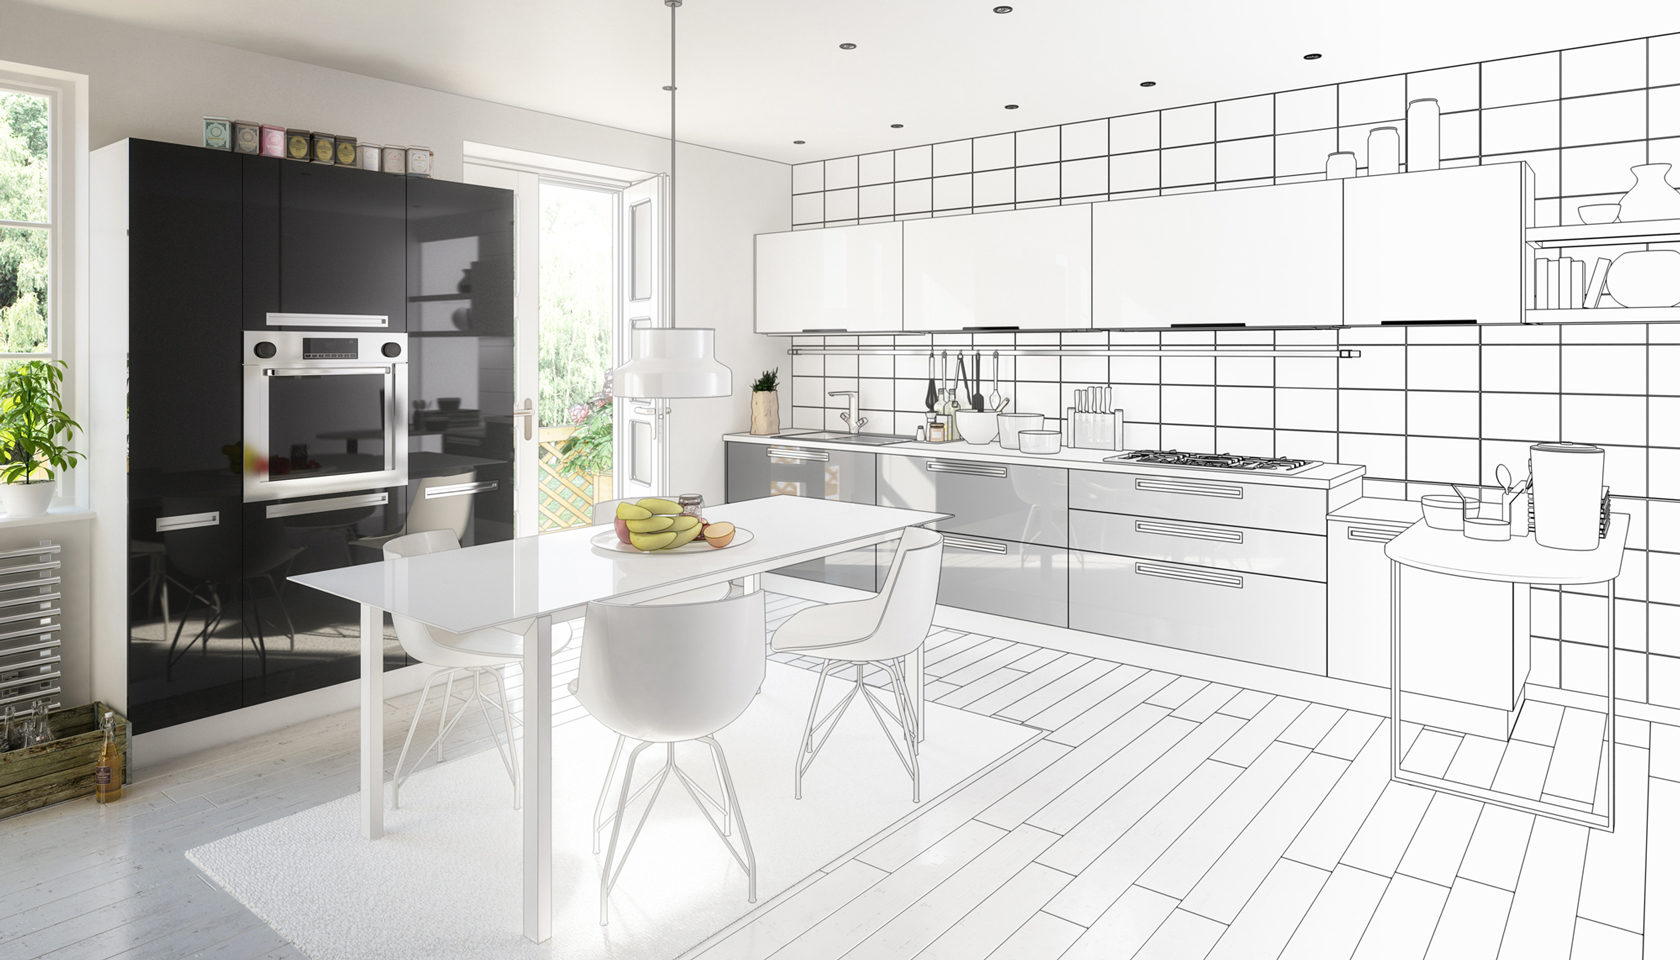 Дизайн кухни 14 кв. метров: 36 идей с фото интерьера кухни